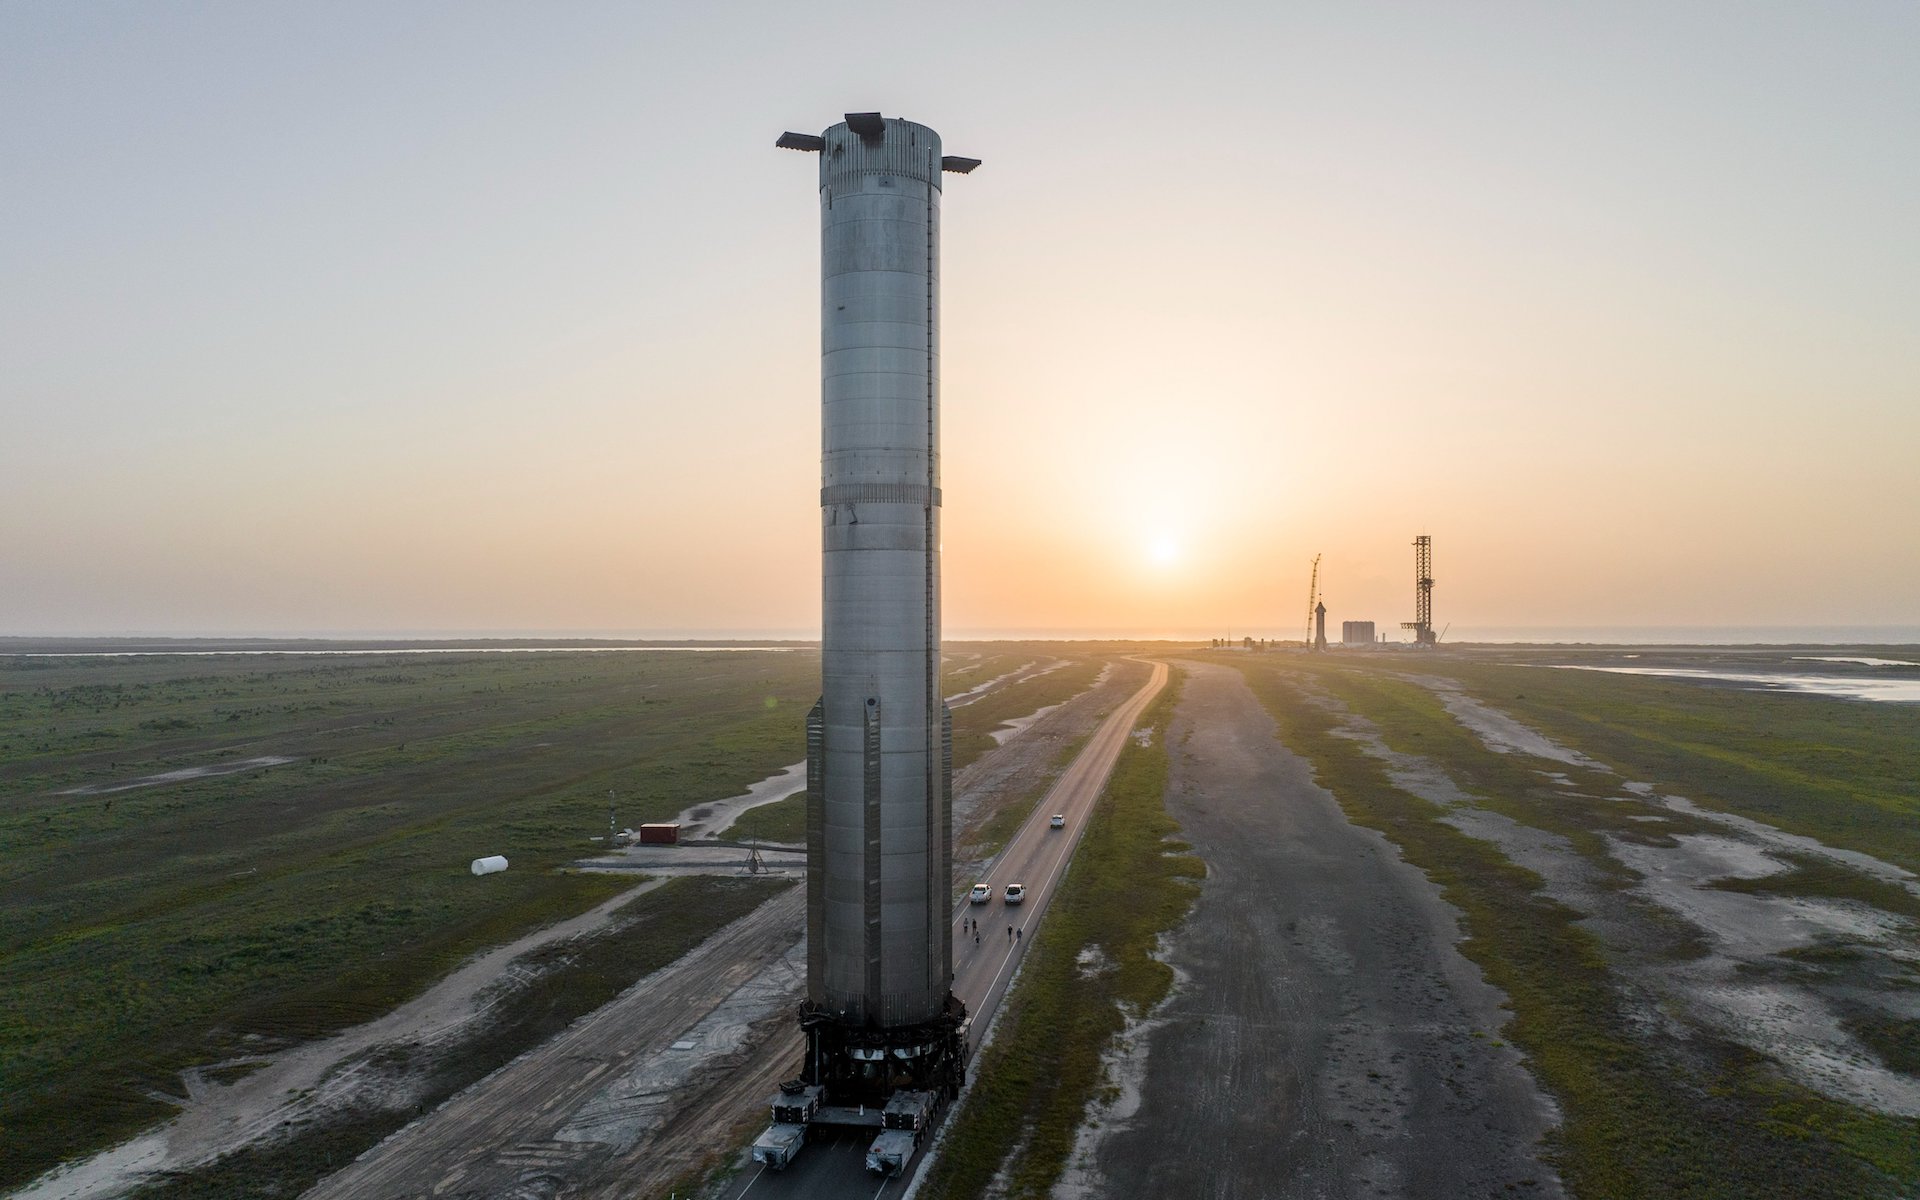 El propulsor enormemente alto y superpoderoso se eleva sobre el paisaje llano de Texas a medida que avanza hacia la plataforma de lanzamiento.